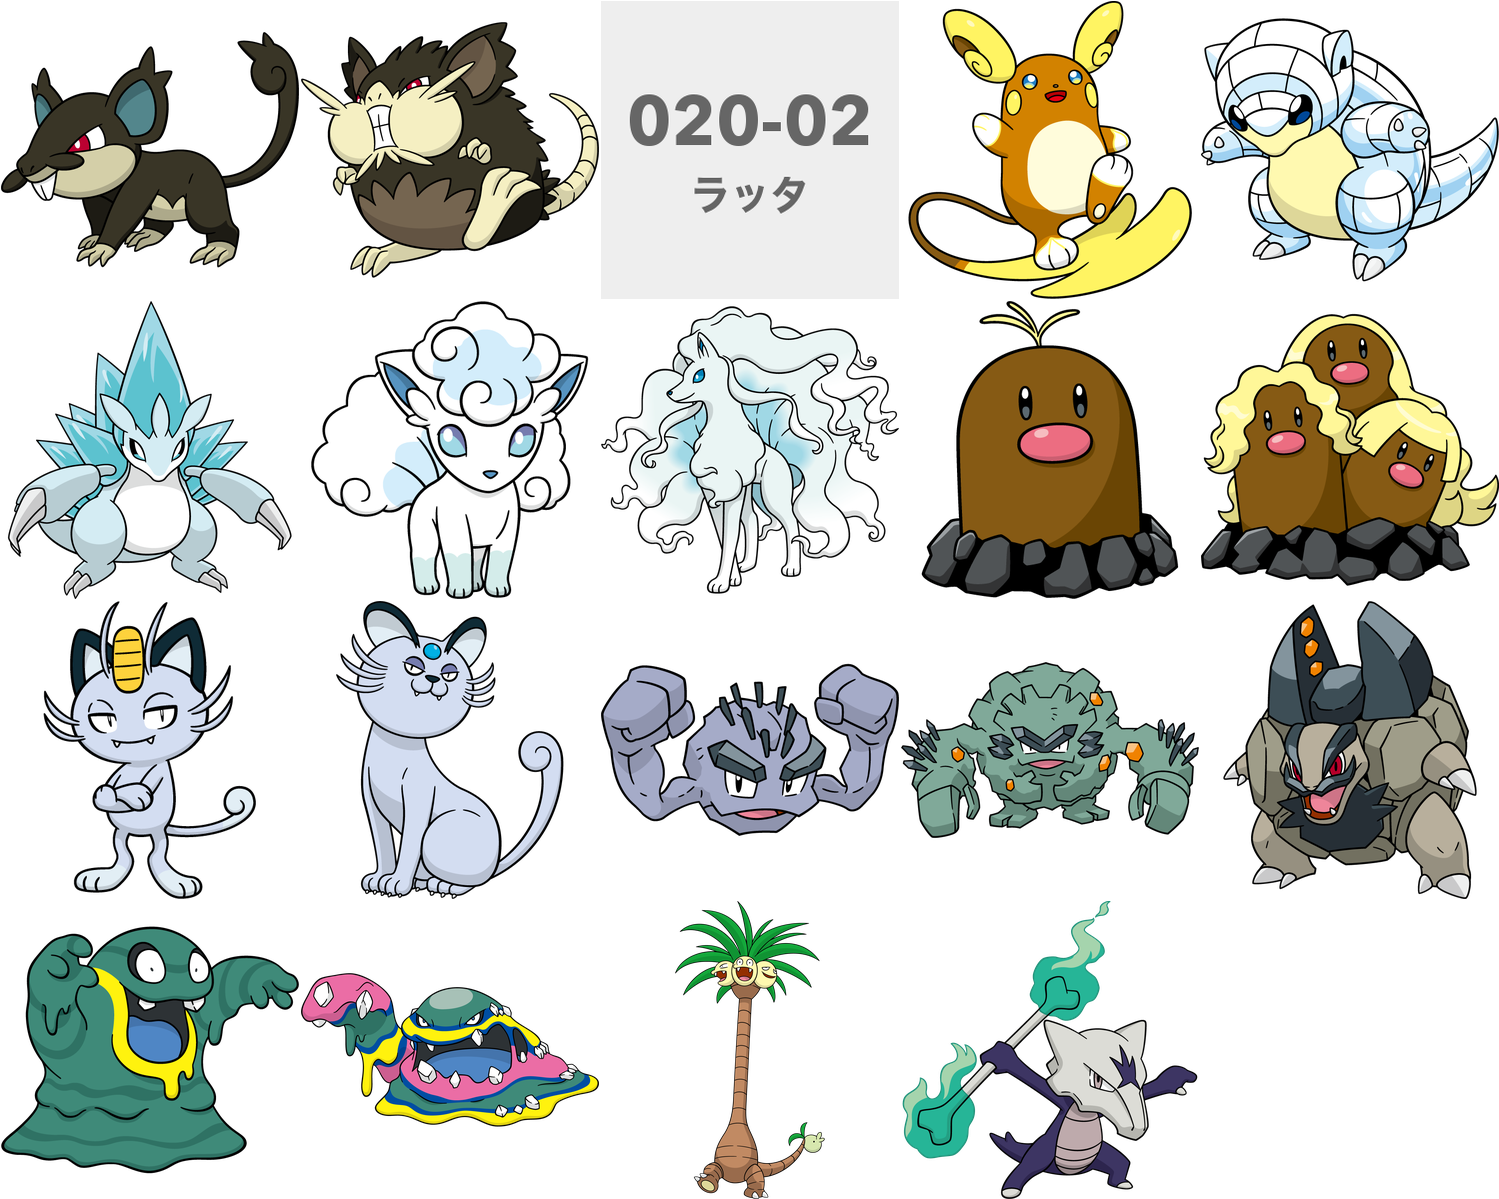 020-02 ラッタ 0 0 Pokémon Sun And Moon Pokémon Ultra Sun - Alolan Ninetales Pokemon Go (1500x1500), Png Download